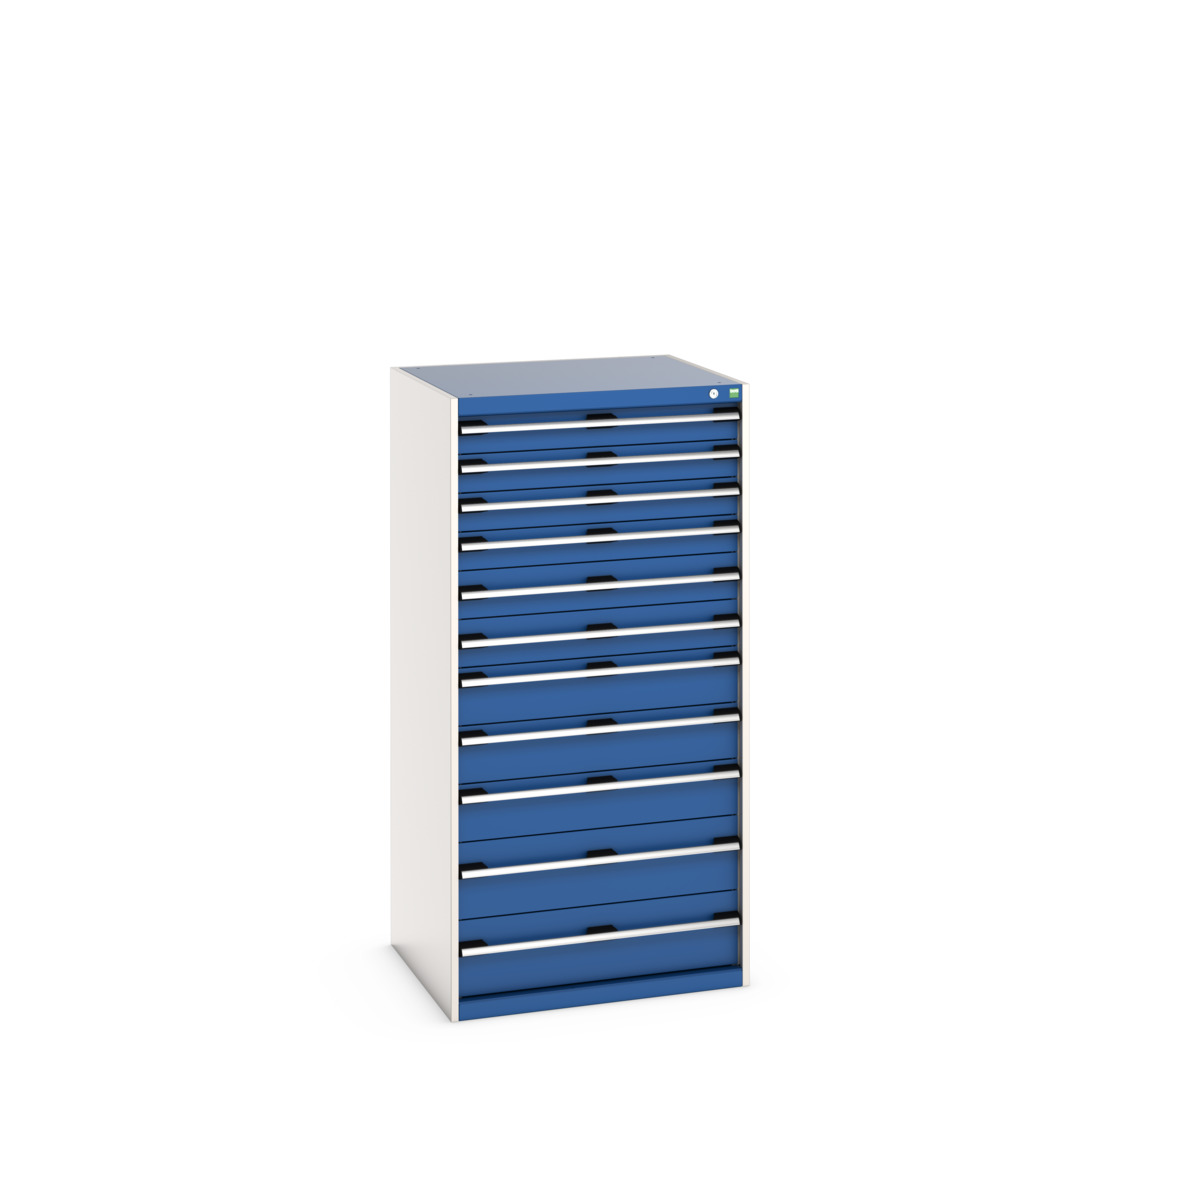 40028042.11V - cubio drawer cabinet